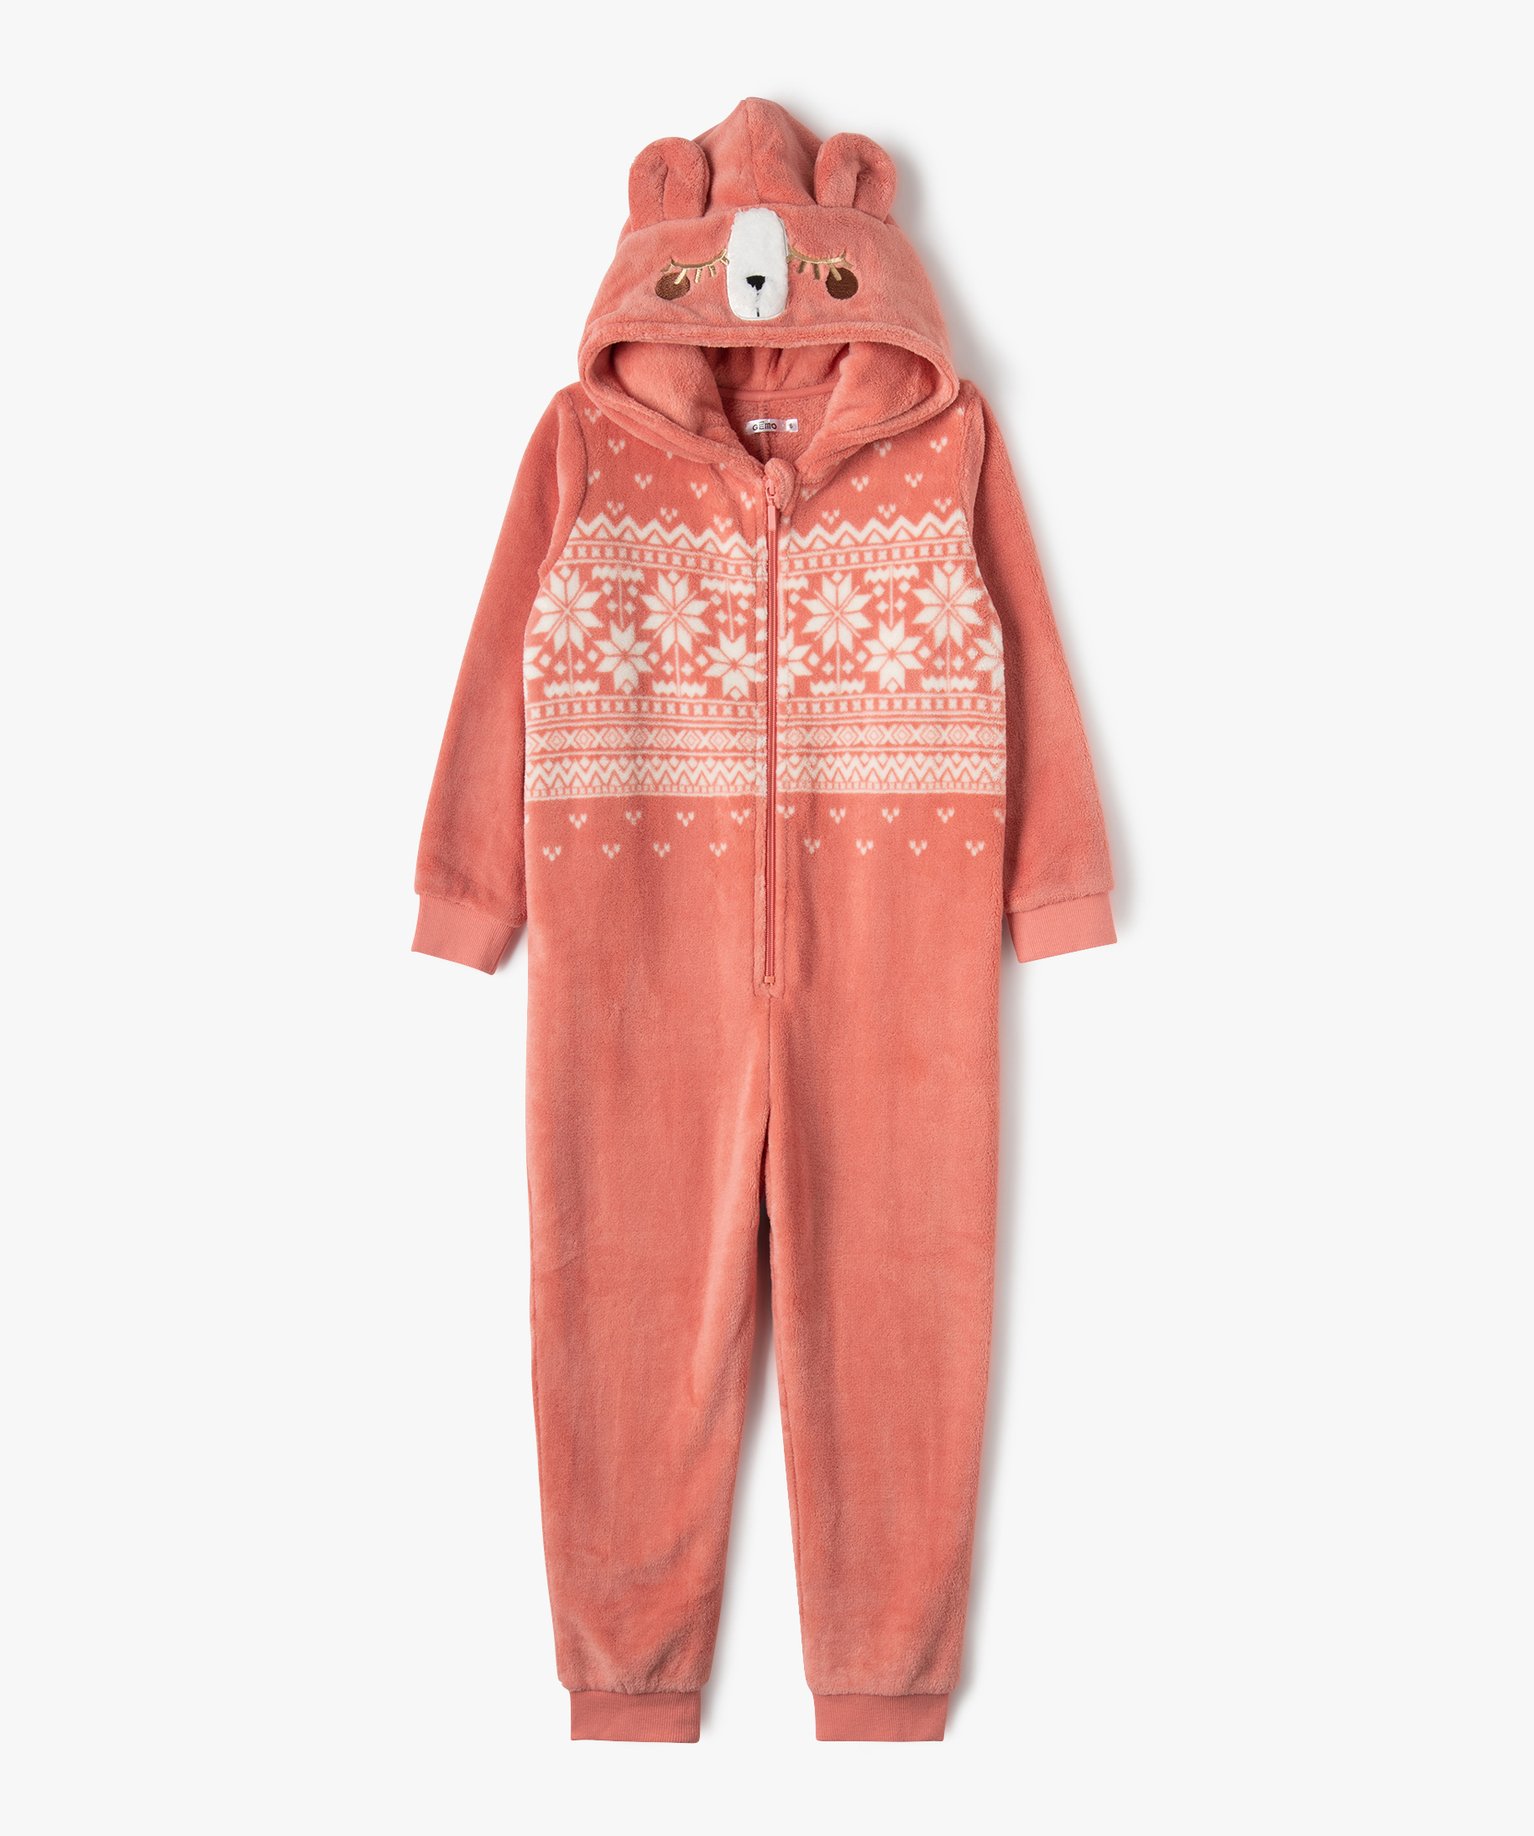 combinaison pyjama enfant zippee a capuche lama rose